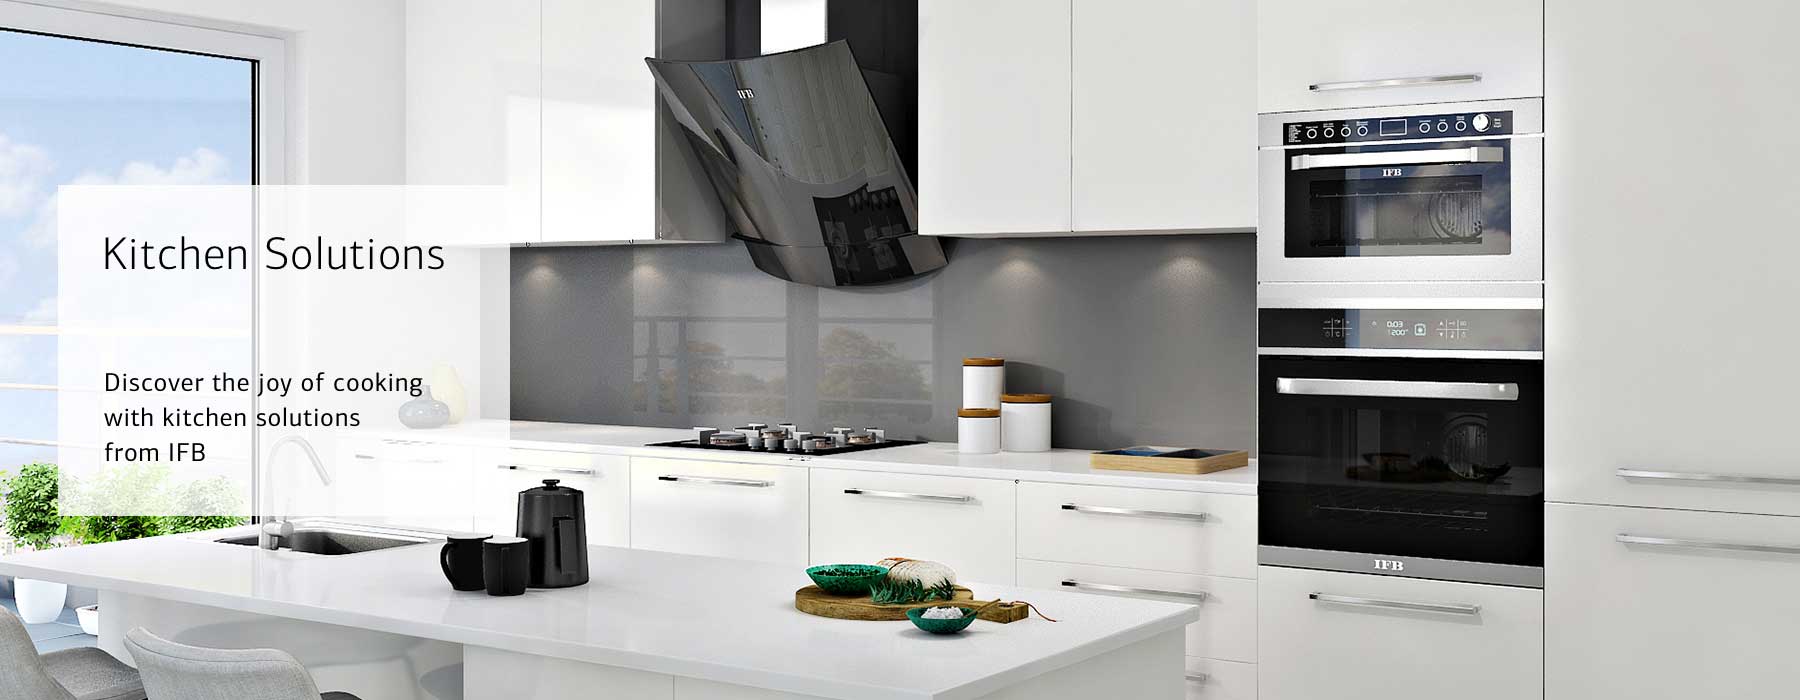 modular_kitchen_wardrobe_website_design